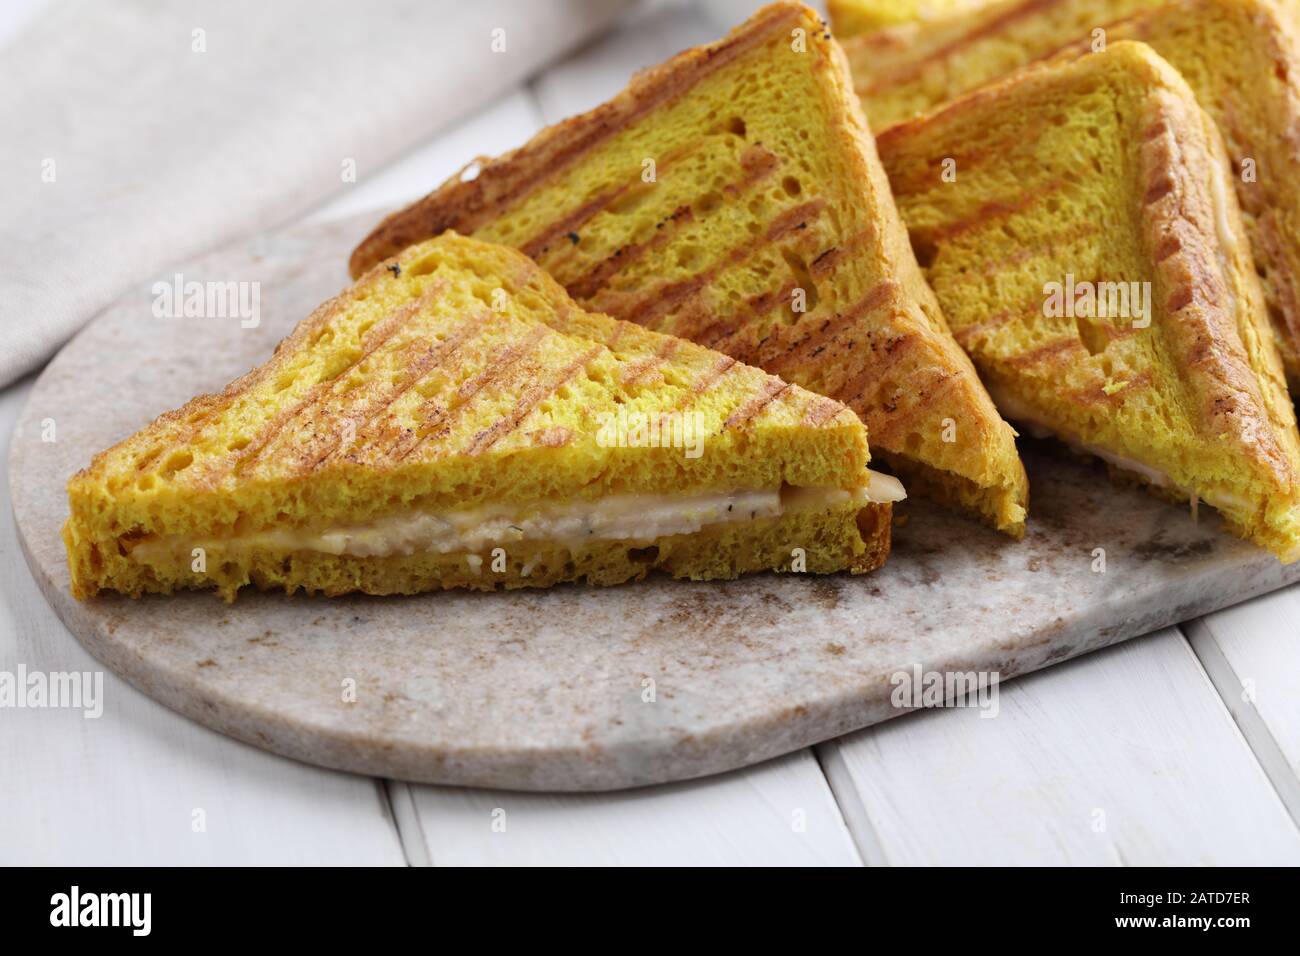 Sandwichs grillés au jambon et au fromage sur une planche à découper en marbre. Le pain grillé avec curcuma donne une couleur jaune vif Banque D'Images